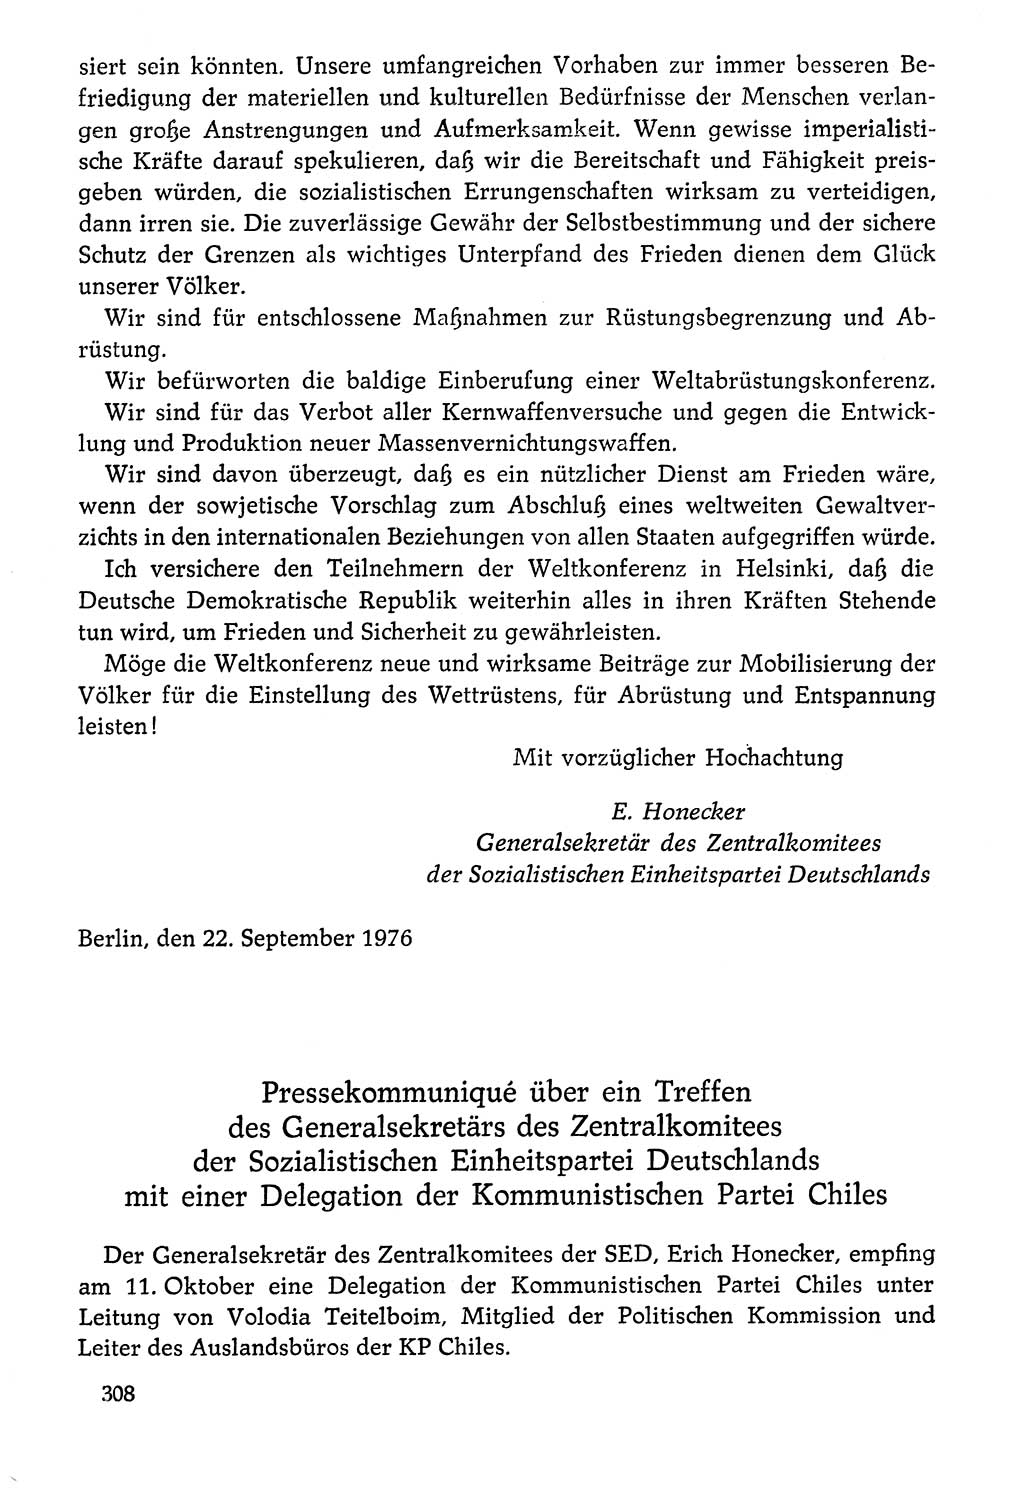 Dokumente der Sozialistischen Einheitspartei Deutschlands (SED) [Deutsche Demokratische Republik (DDR)] 1976-1977, Seite 308 (Dok. SED DDR 1976-1977, S. 308)